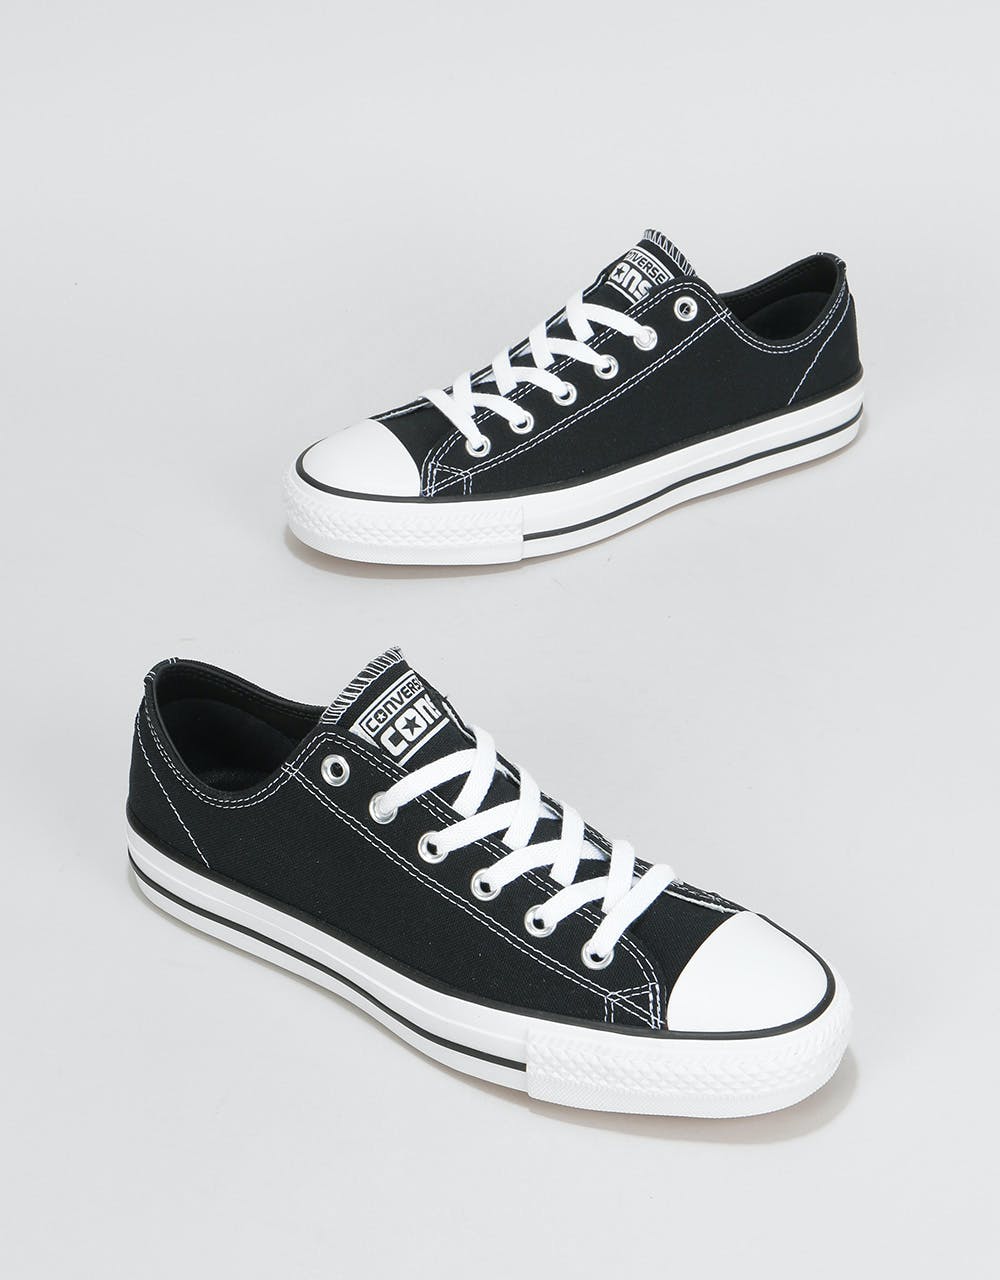 Converse CTAS Pro Ox Canvas Skate Shoes - Black/Black/White